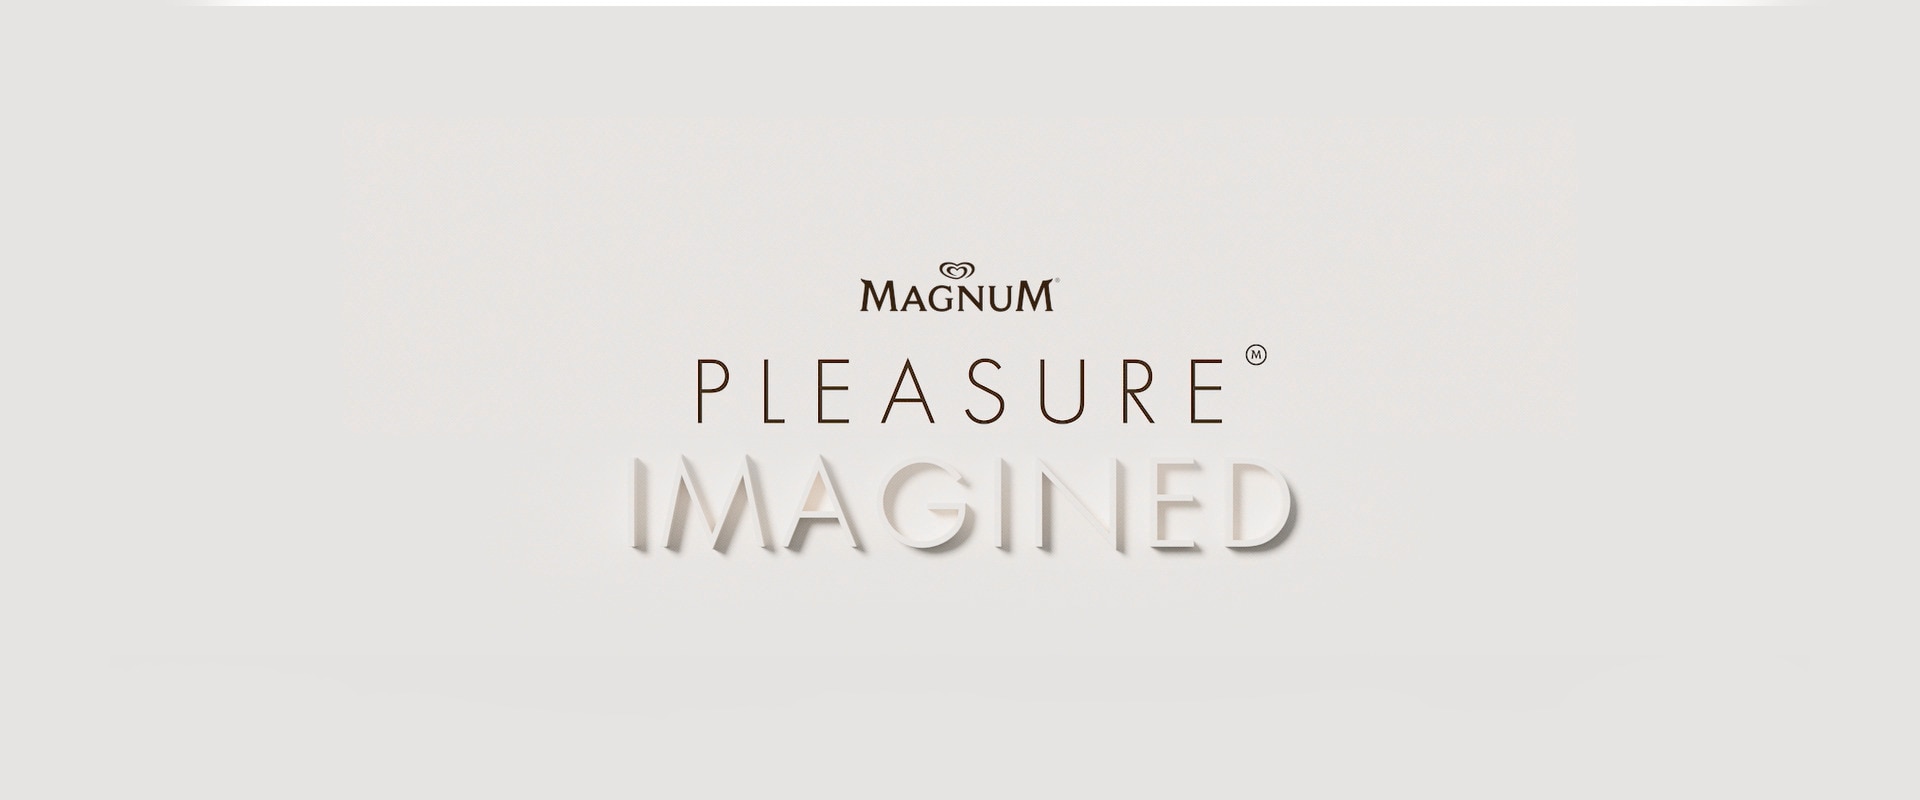 Pleasure Imagined